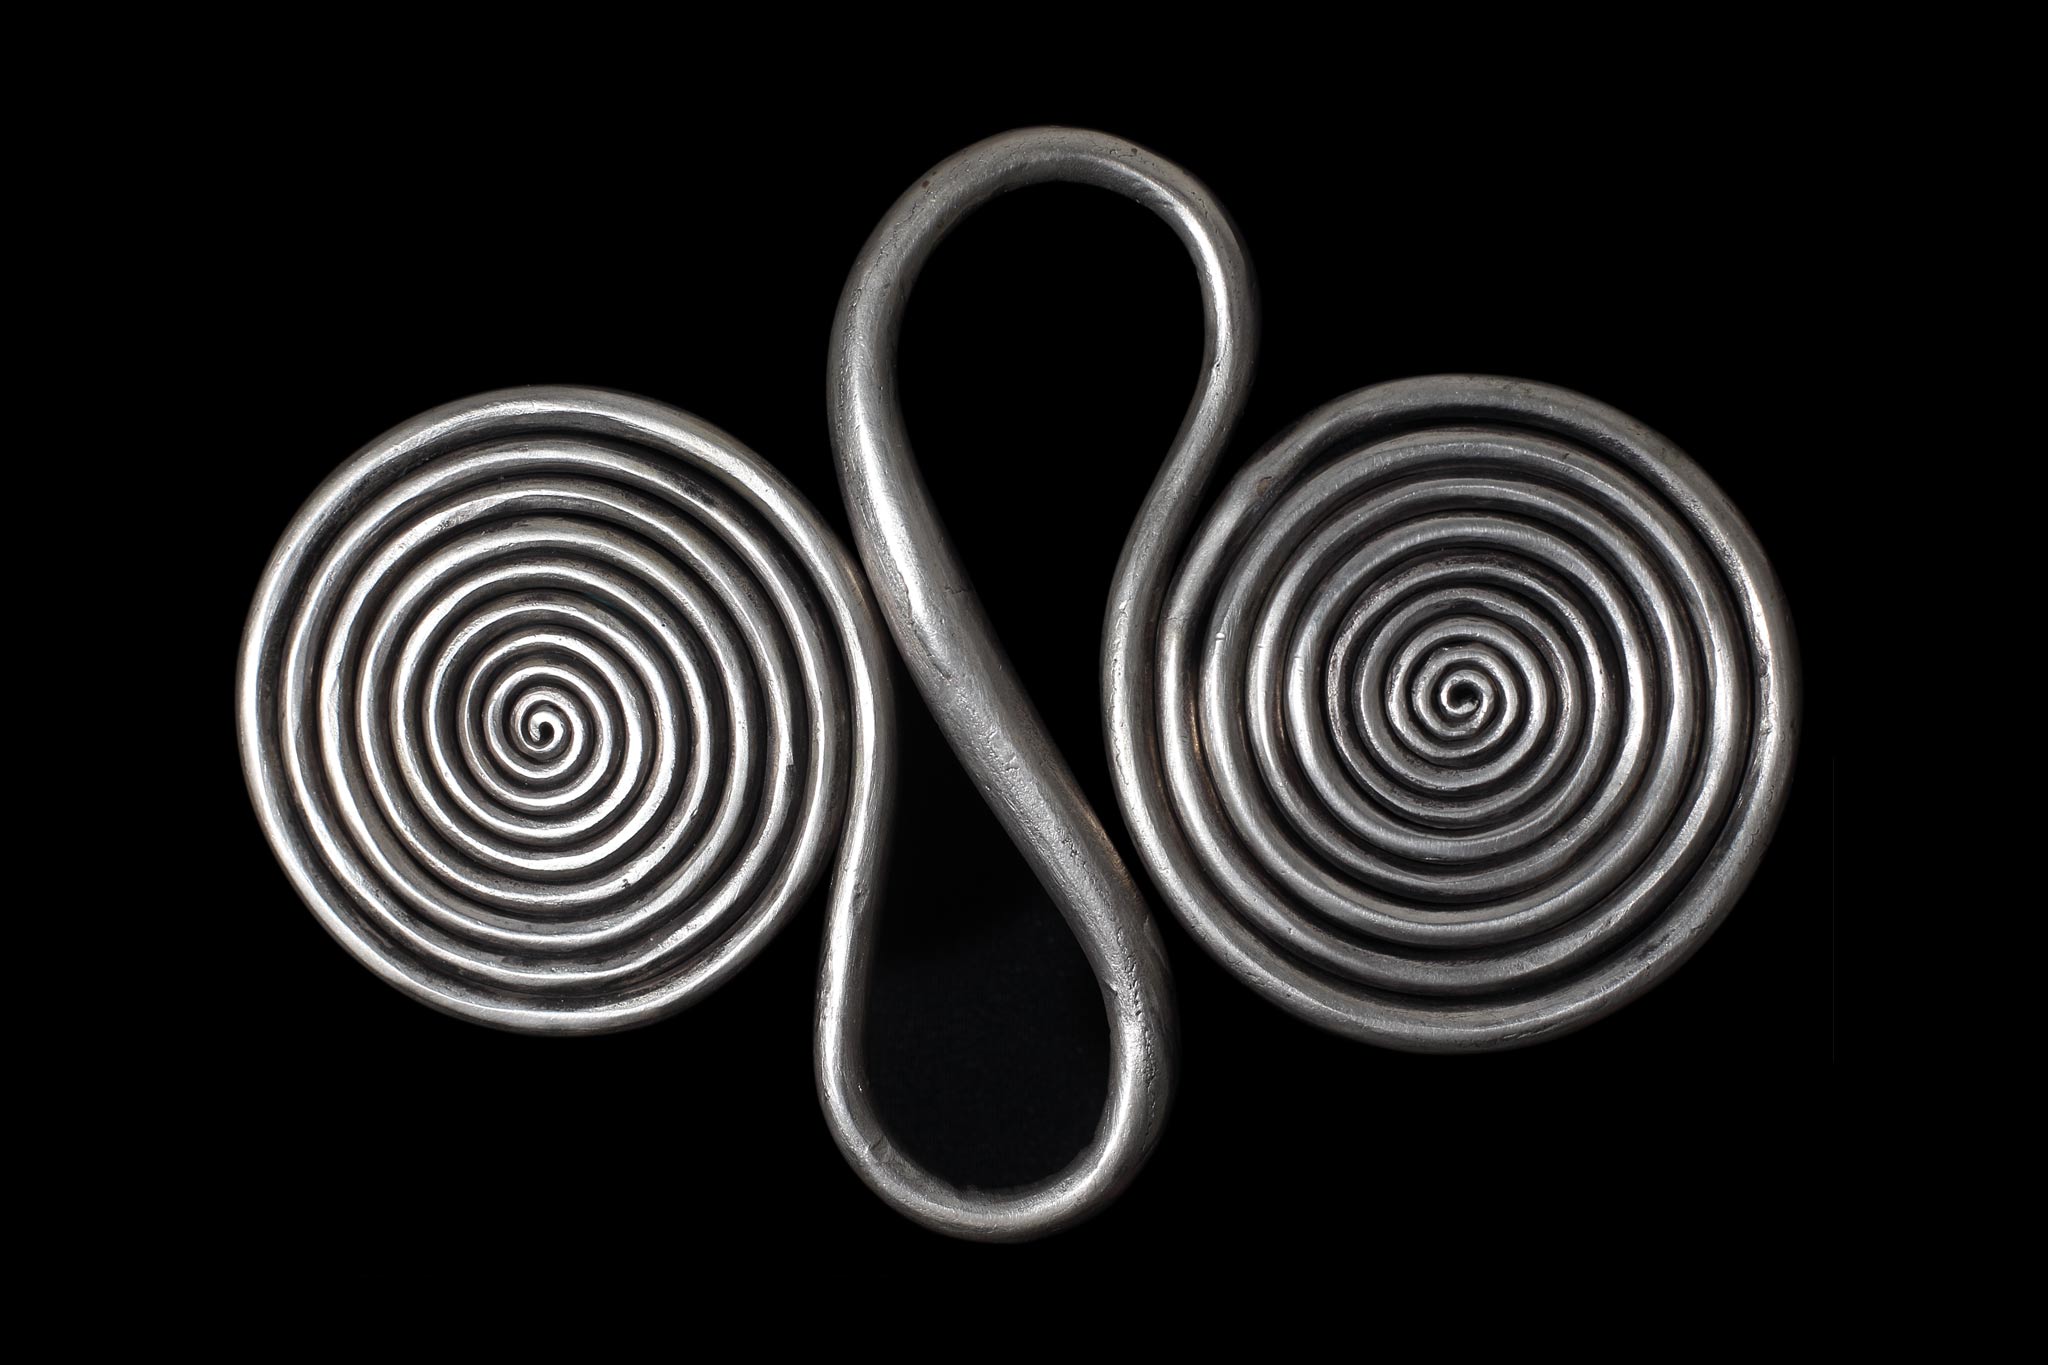 モン族(ミャオ族)の銀装飾品に現れる螺旋文様